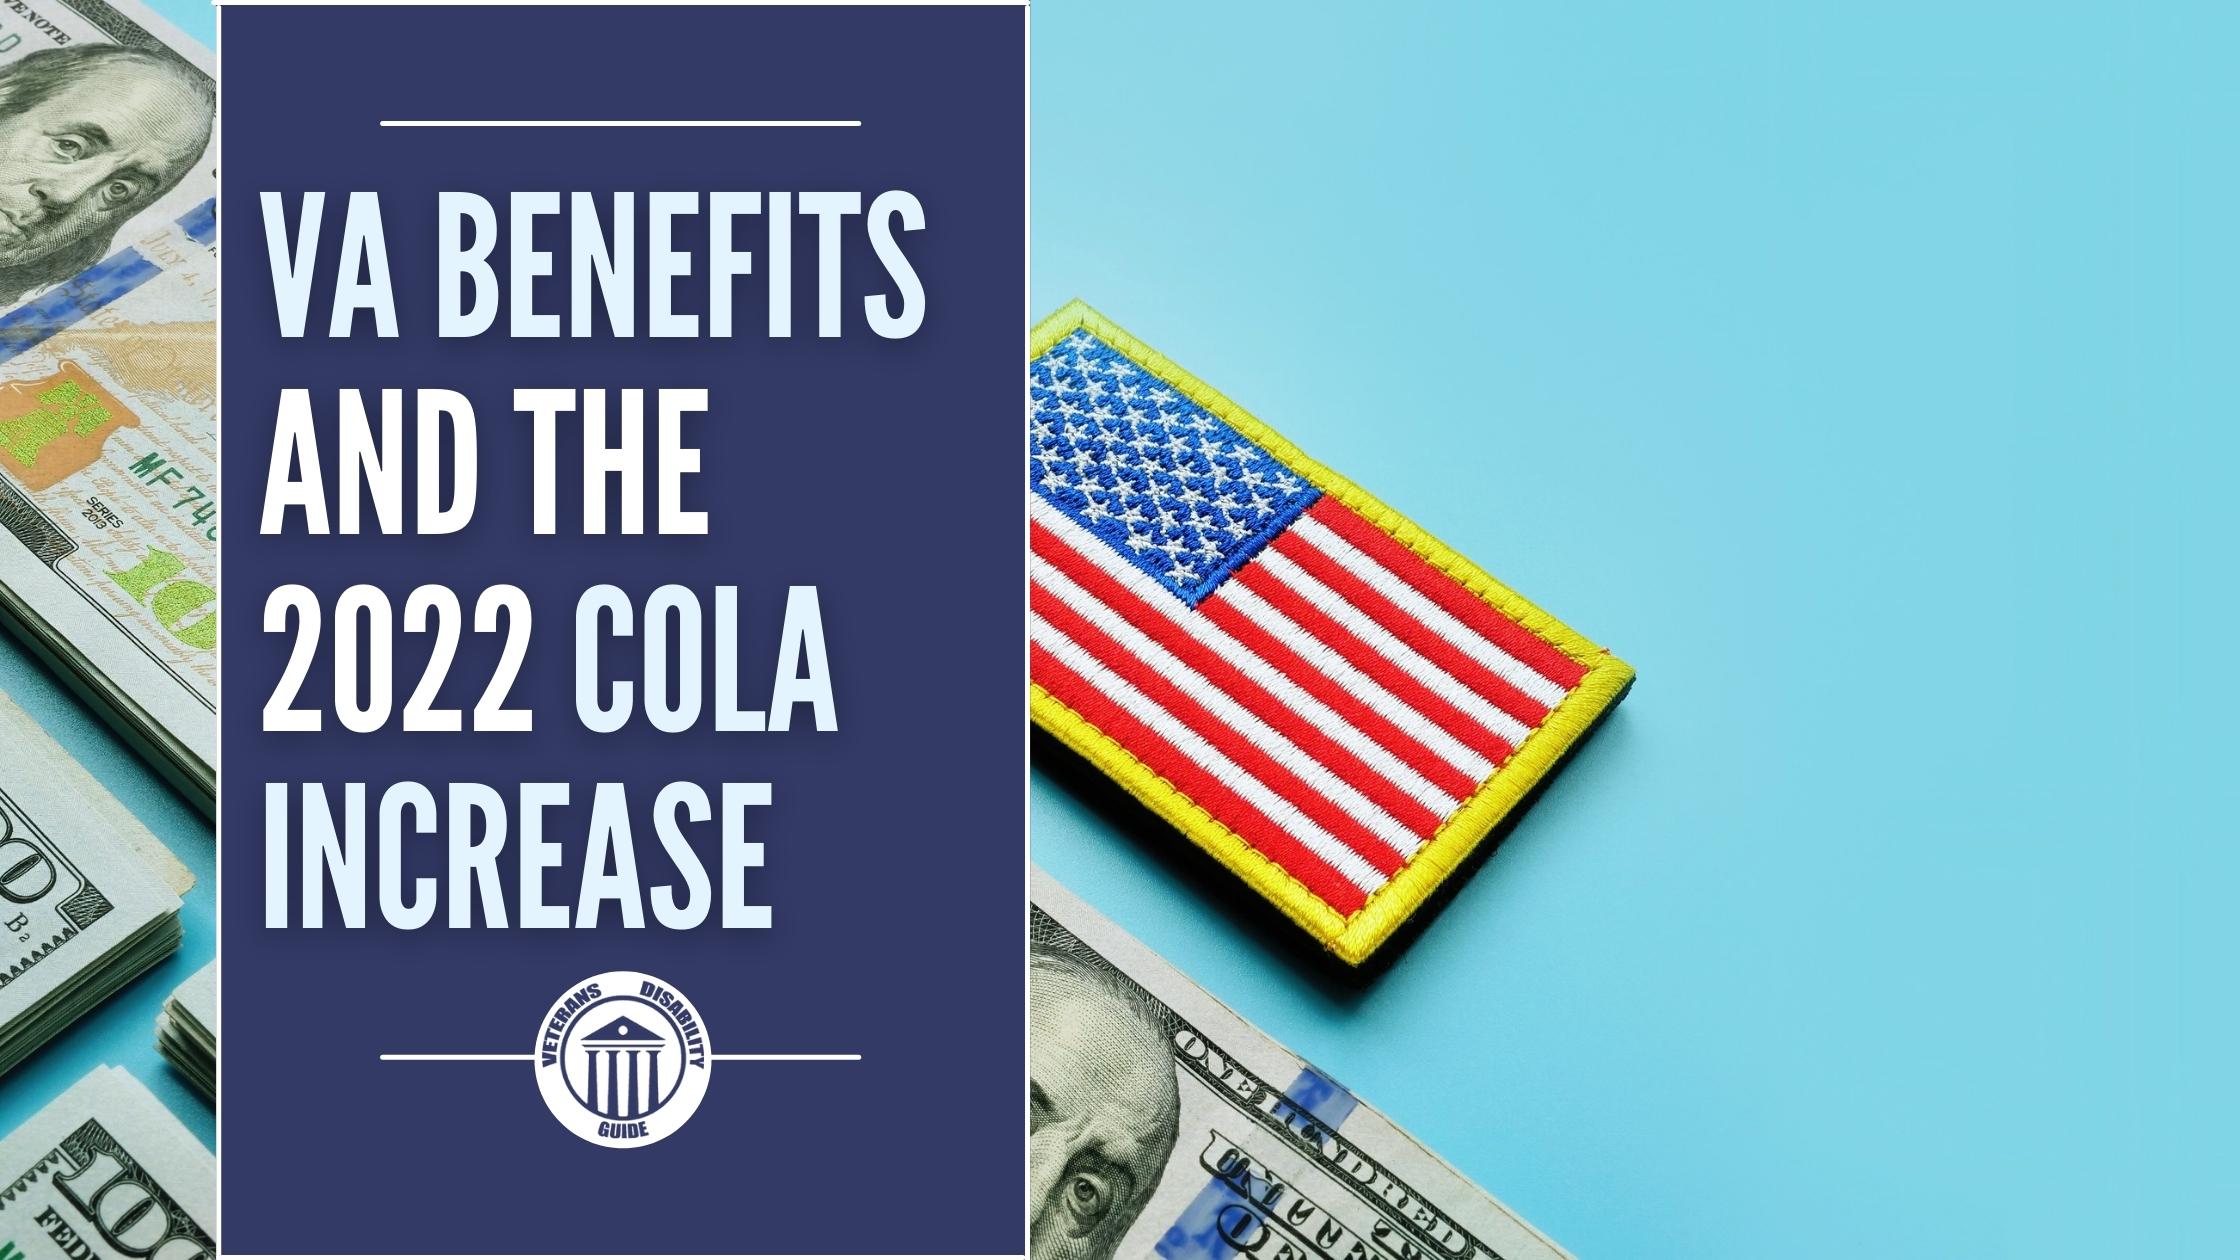 VA Benefits and the COLA 2022 Increase blog header image